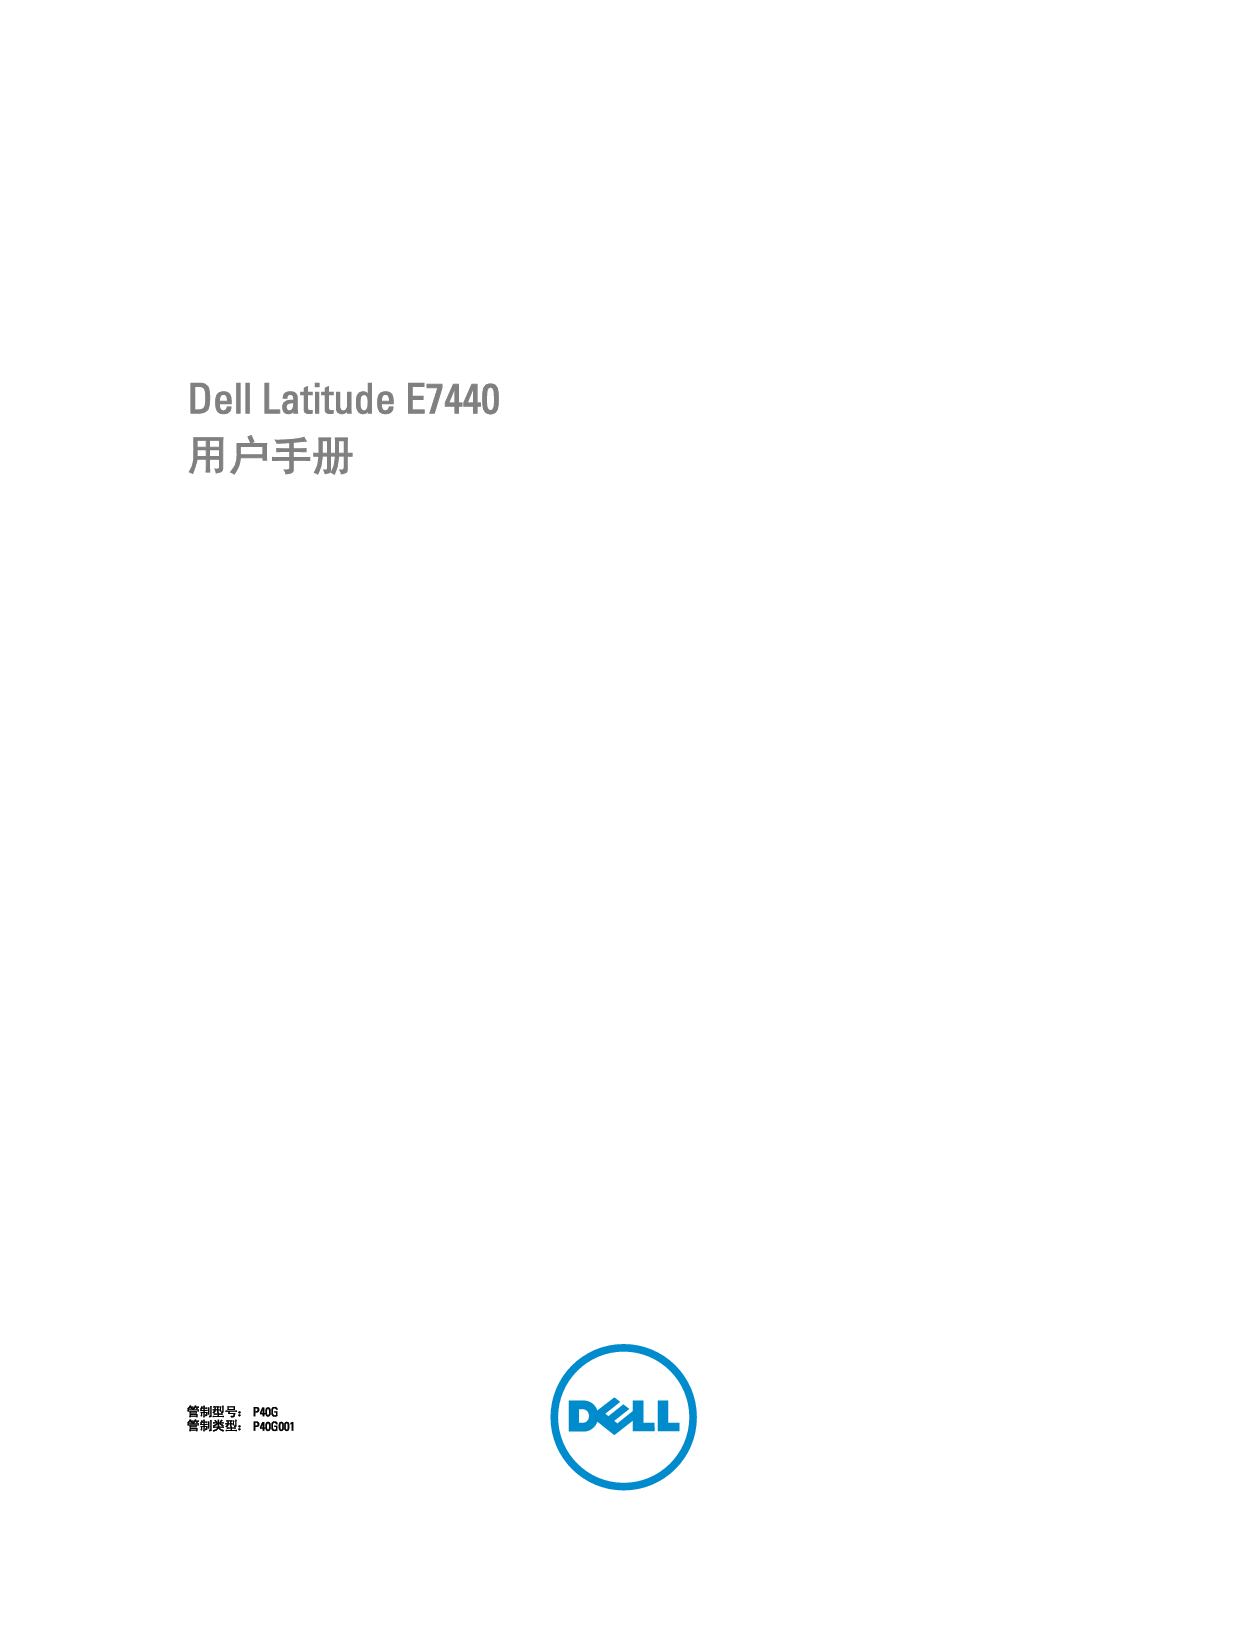 戴尔 Dell Latitude E7440 用户手册 封面